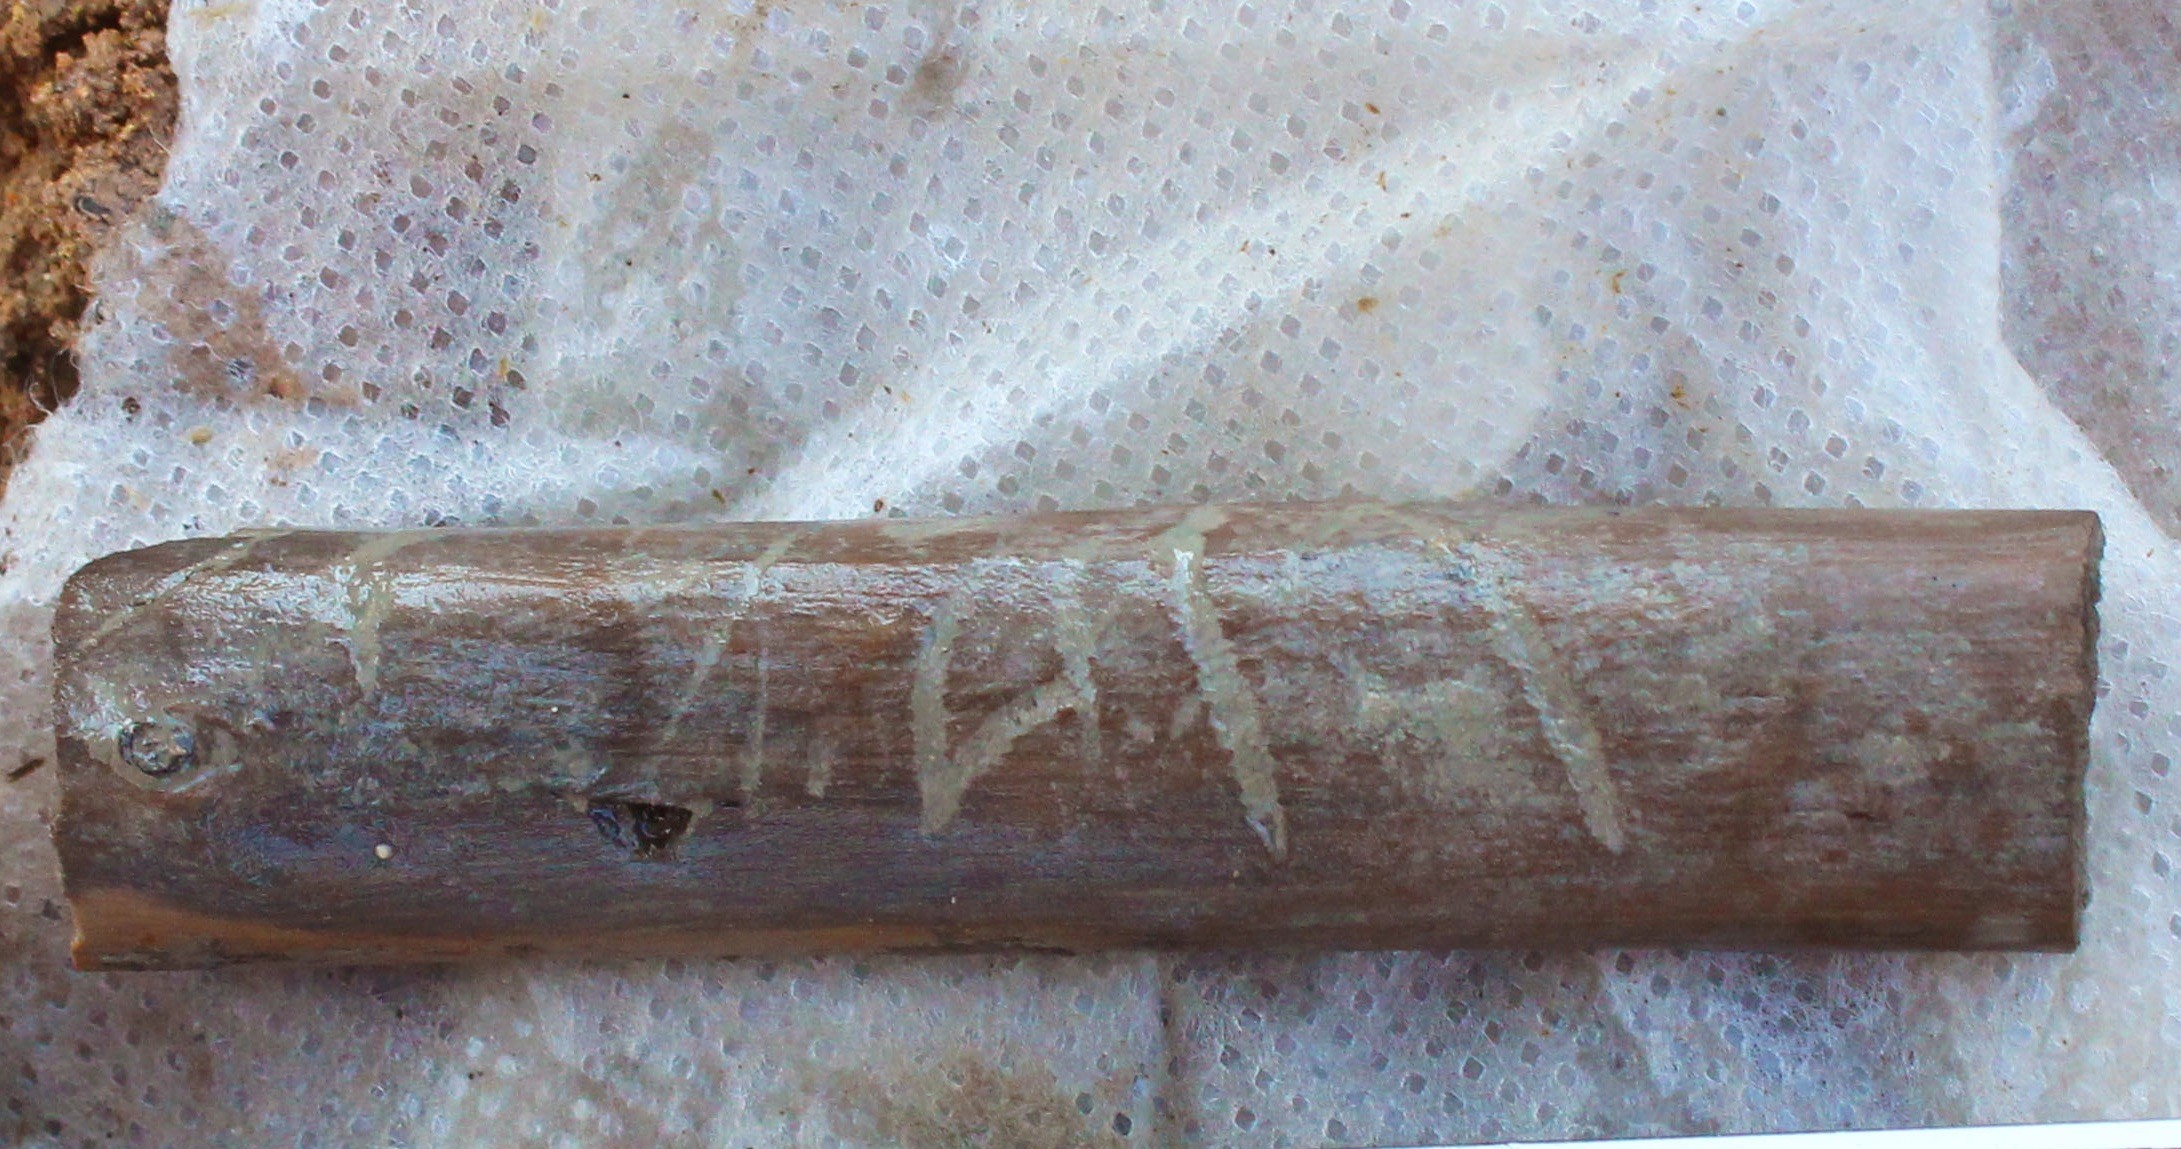 Artefato de madeira com inscrições encontrado no sítio arqueológico (Foto: S OPRINTENDENZA SPECIALE DI ROMA)